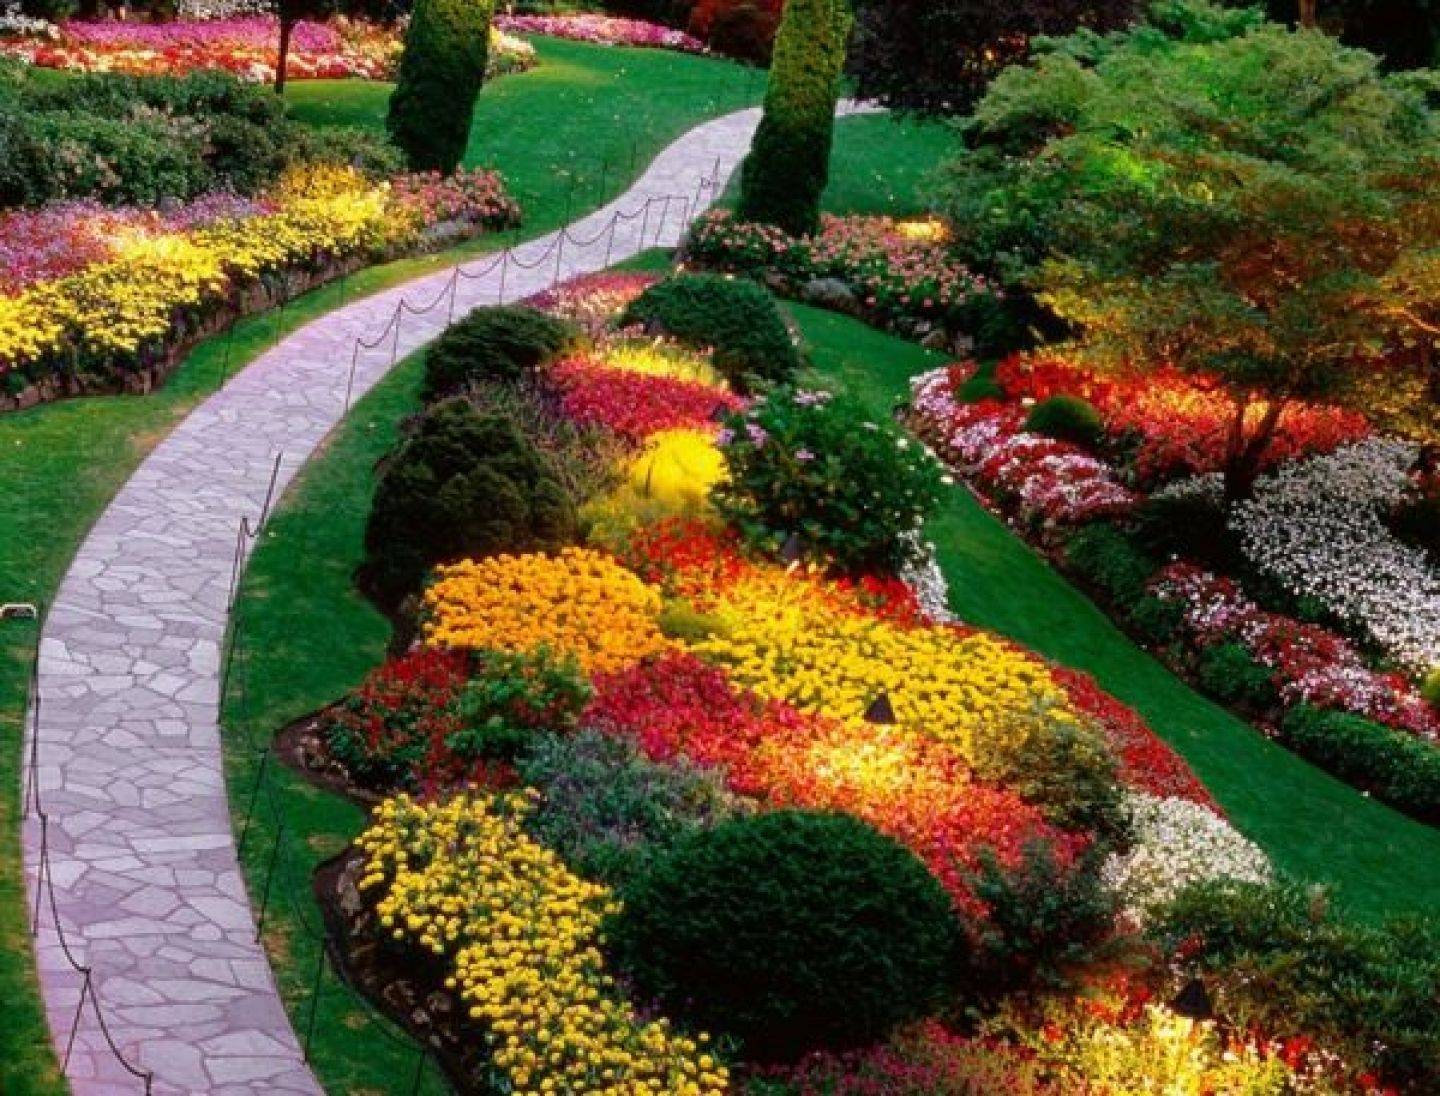 Garden Designs